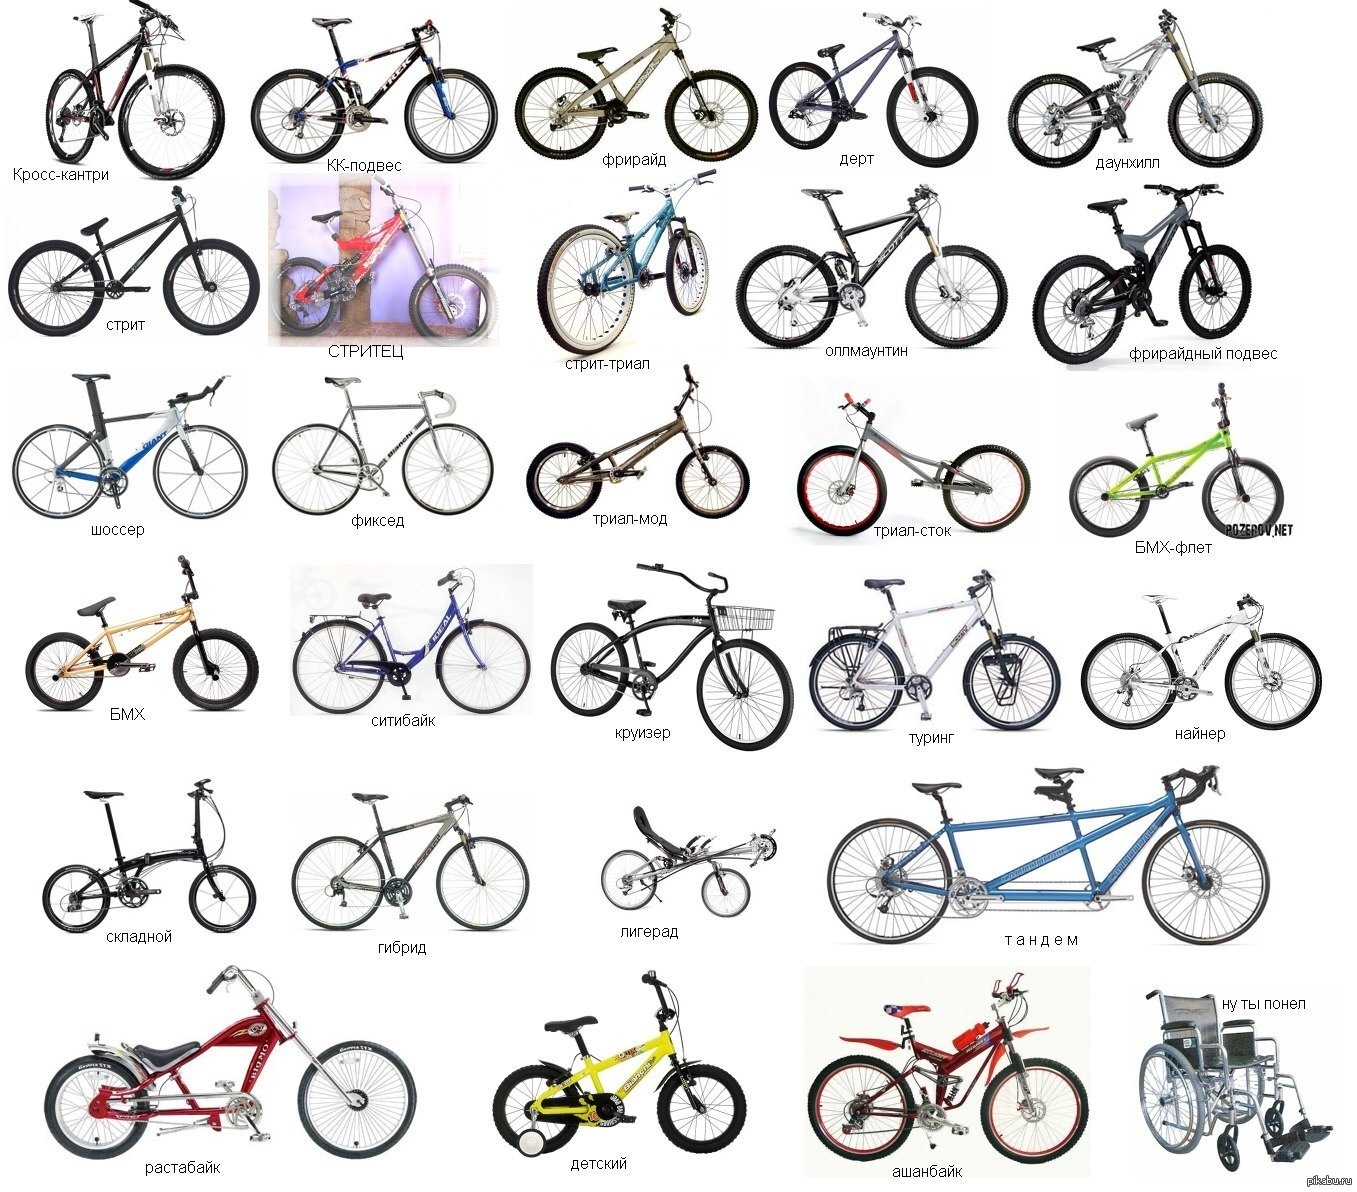 Типа велика. Классификация велосипедов. Велосипеды по видам. Разнообразия моделей велосипедов. Разные типы велосипедов.